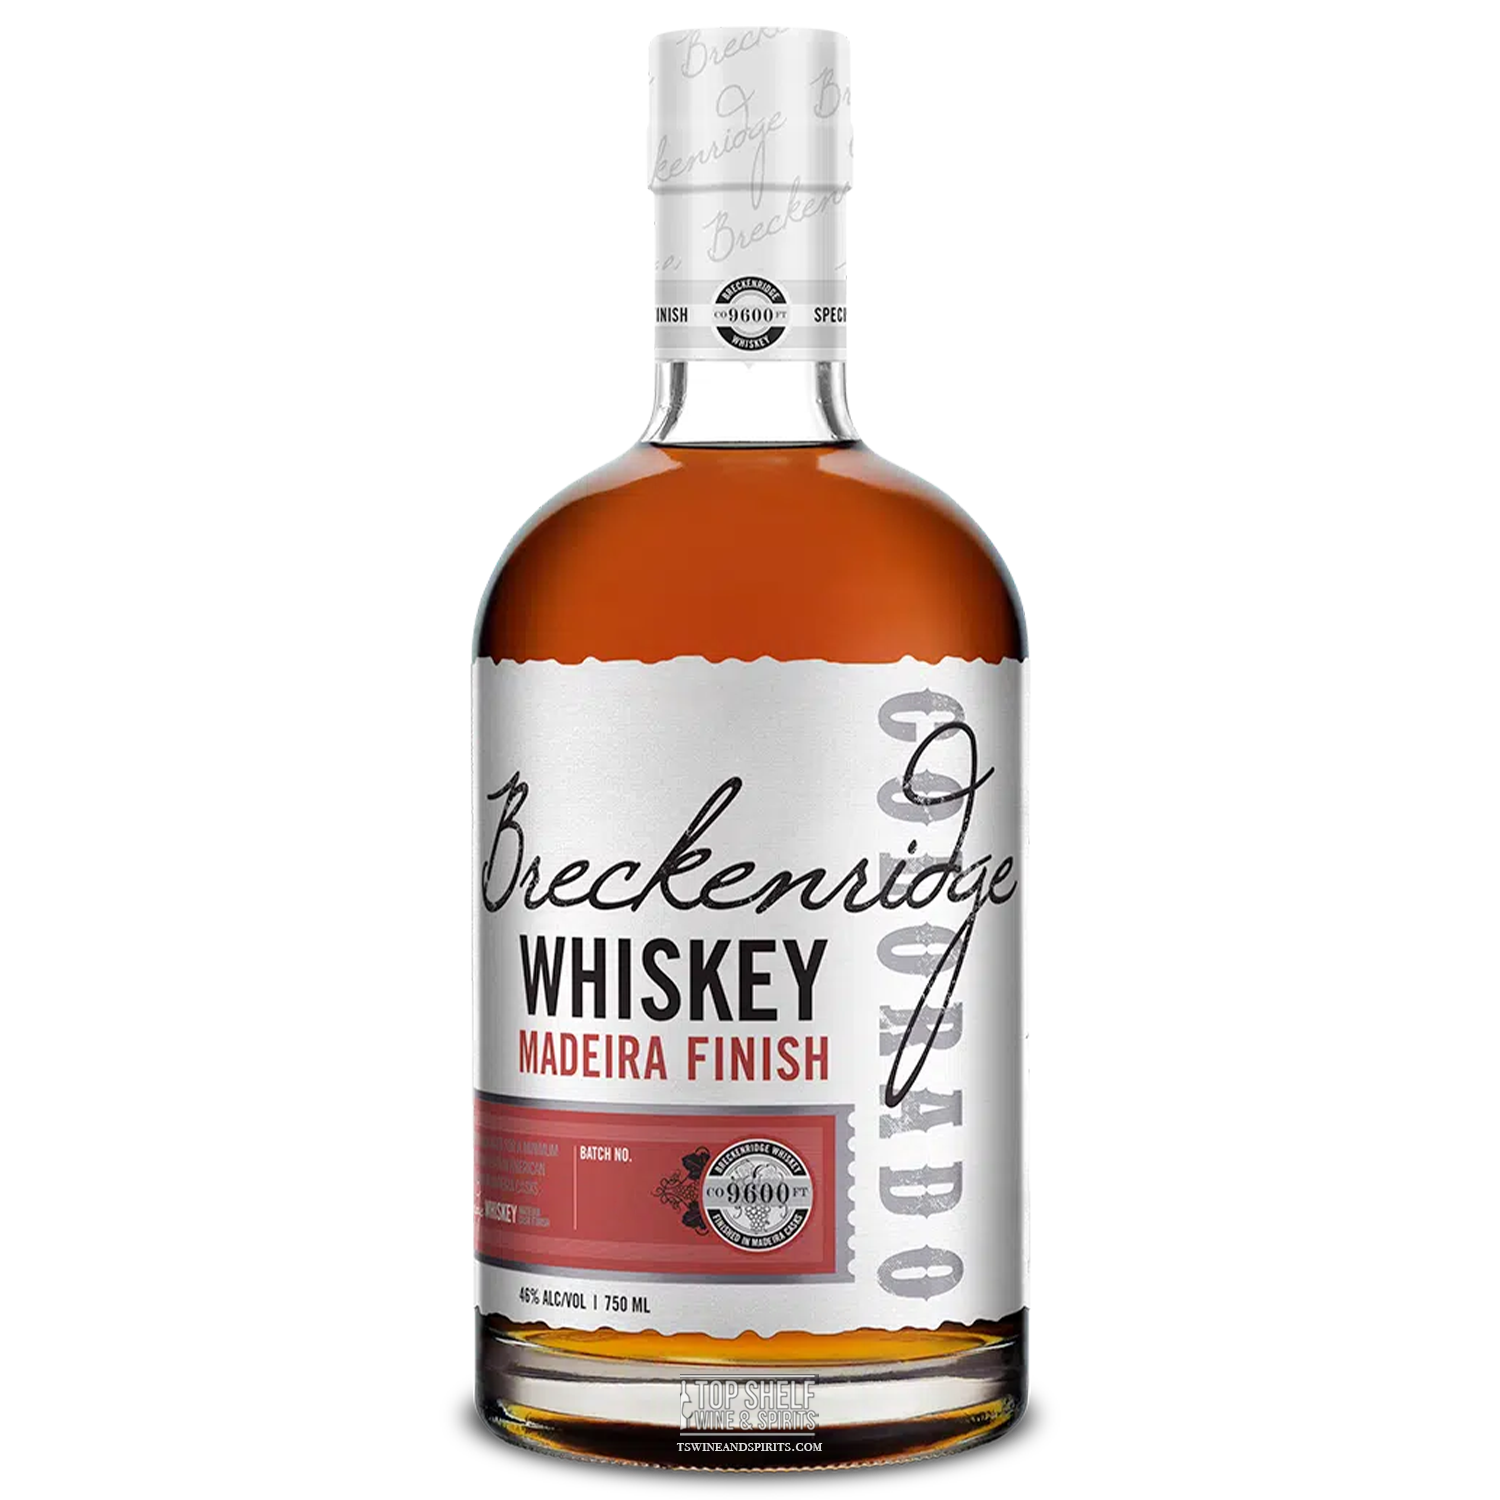 Breckenridge Madeira Finish Whiskey (Batch 2)